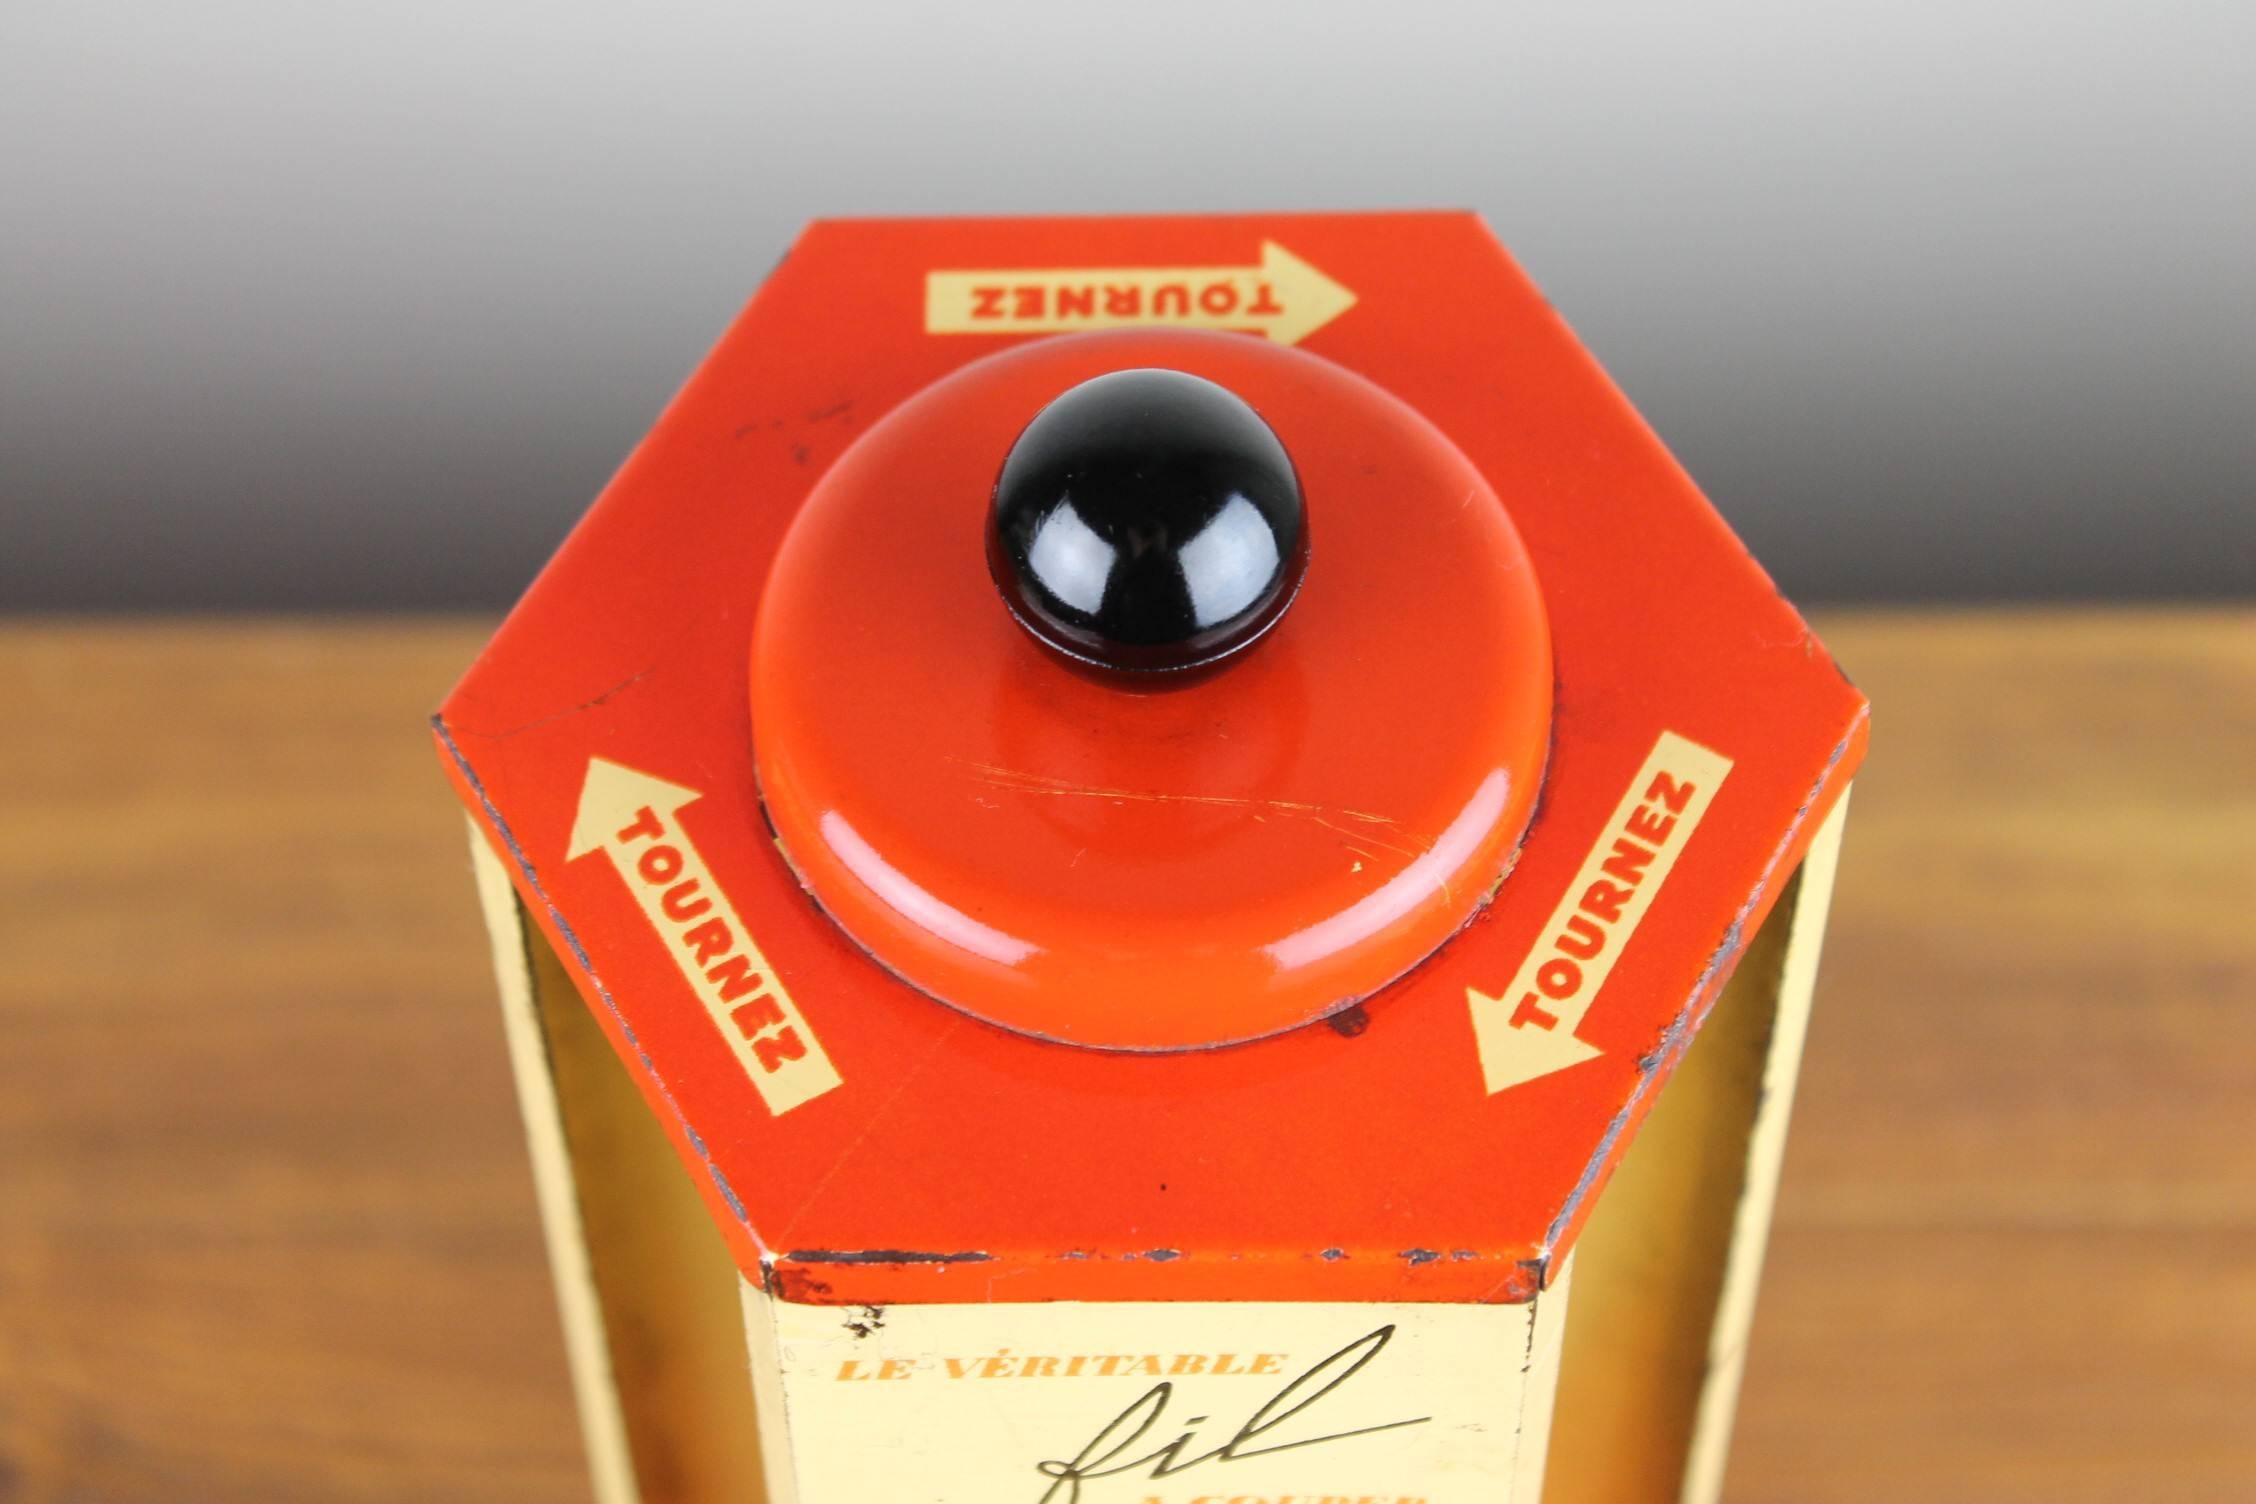 Vintage Ladendisplay - Thekendisplay für Gibbs Rasierapparate. 
Eine Ladenmühle aus den 1950er Jahren - Auslage mit kleinen Schachteln, gefüllt mit Rasiermessern. 
Dieser authentische Rasiermesser-Verkaufsautomat stammt aus Frankreich. 
Er ist aus